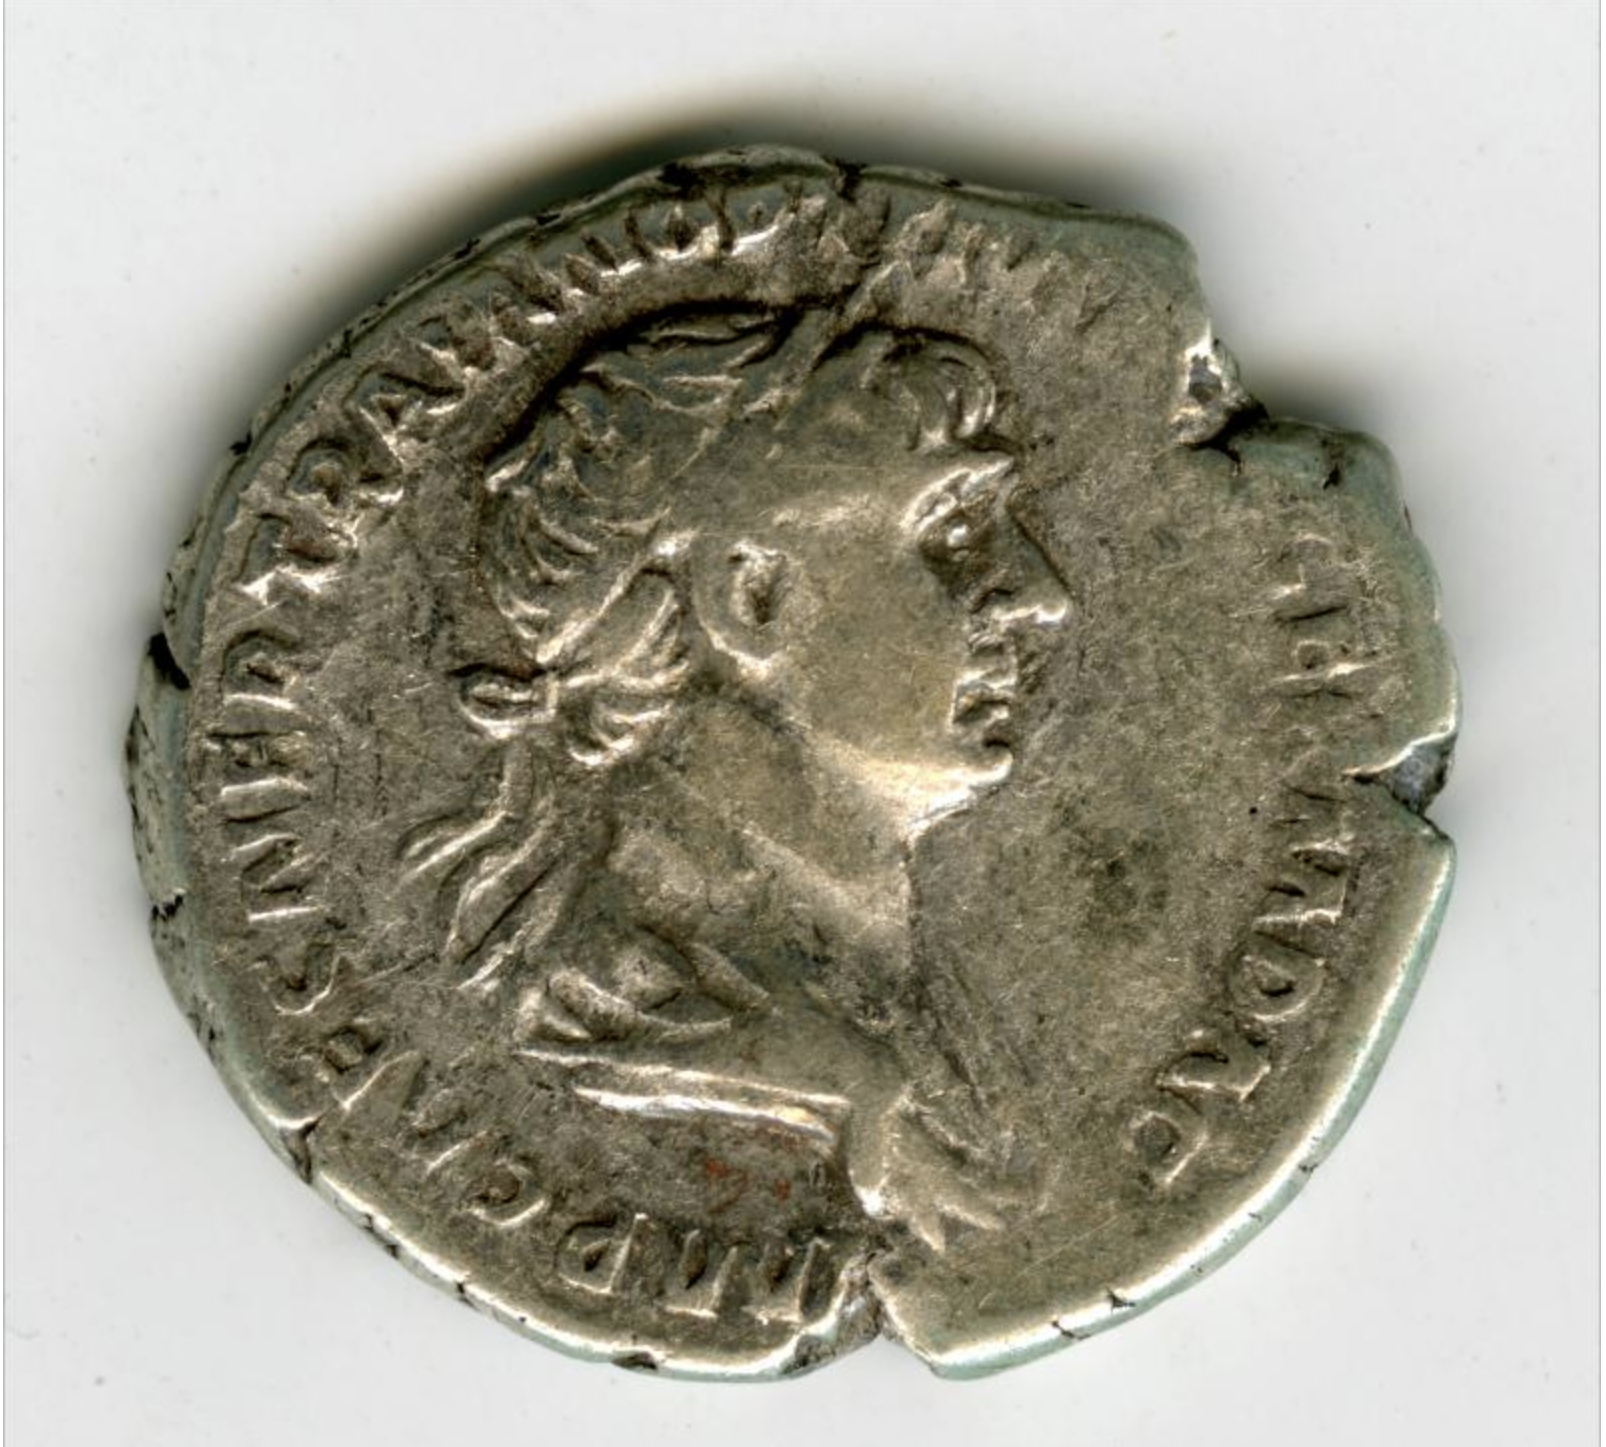 Coin showing emperor Trajan